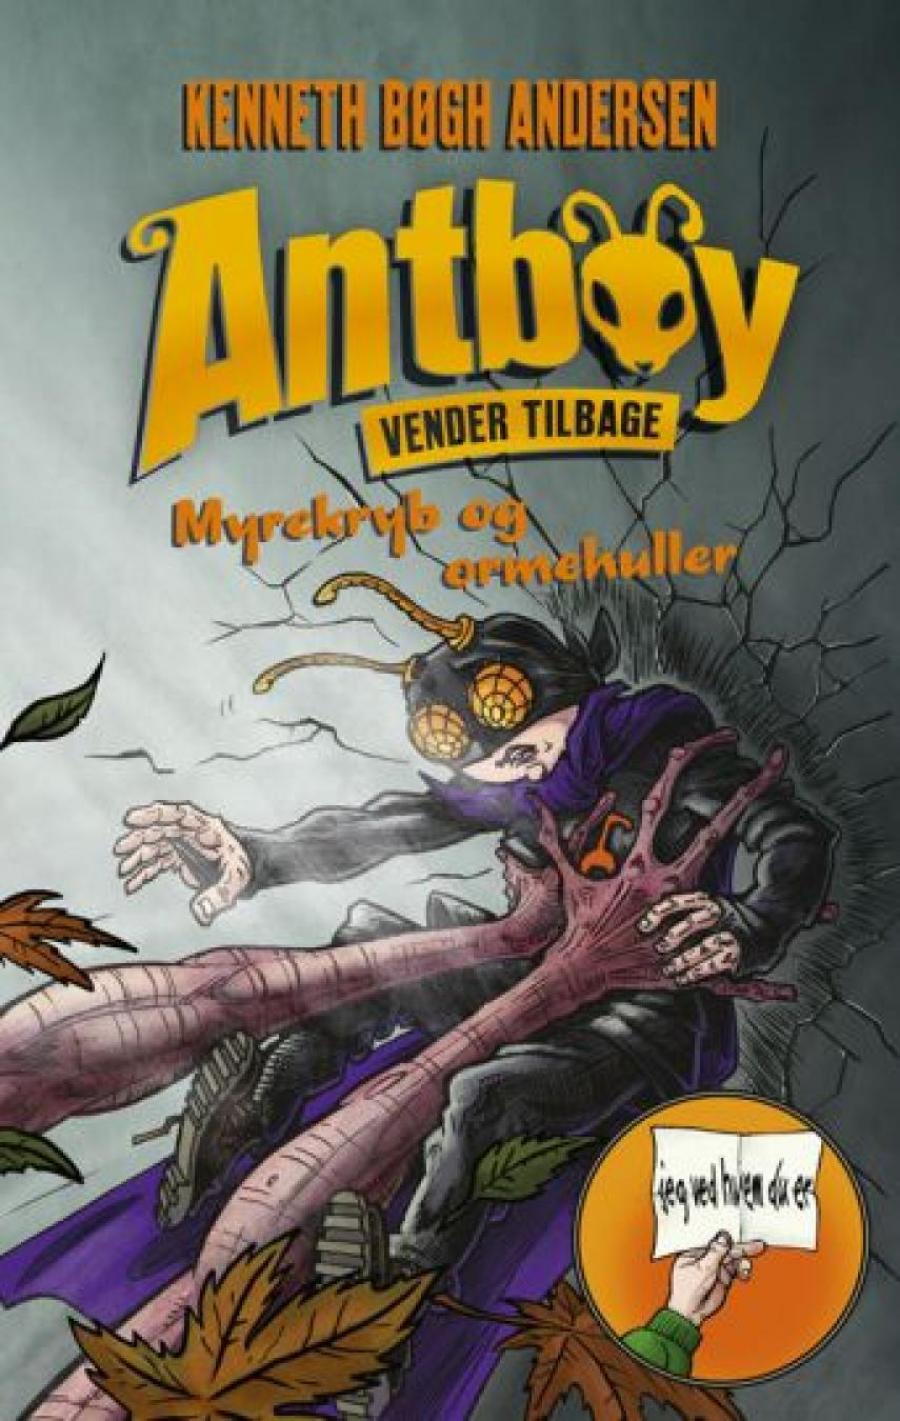 Forsiden af bogen "Antboy"